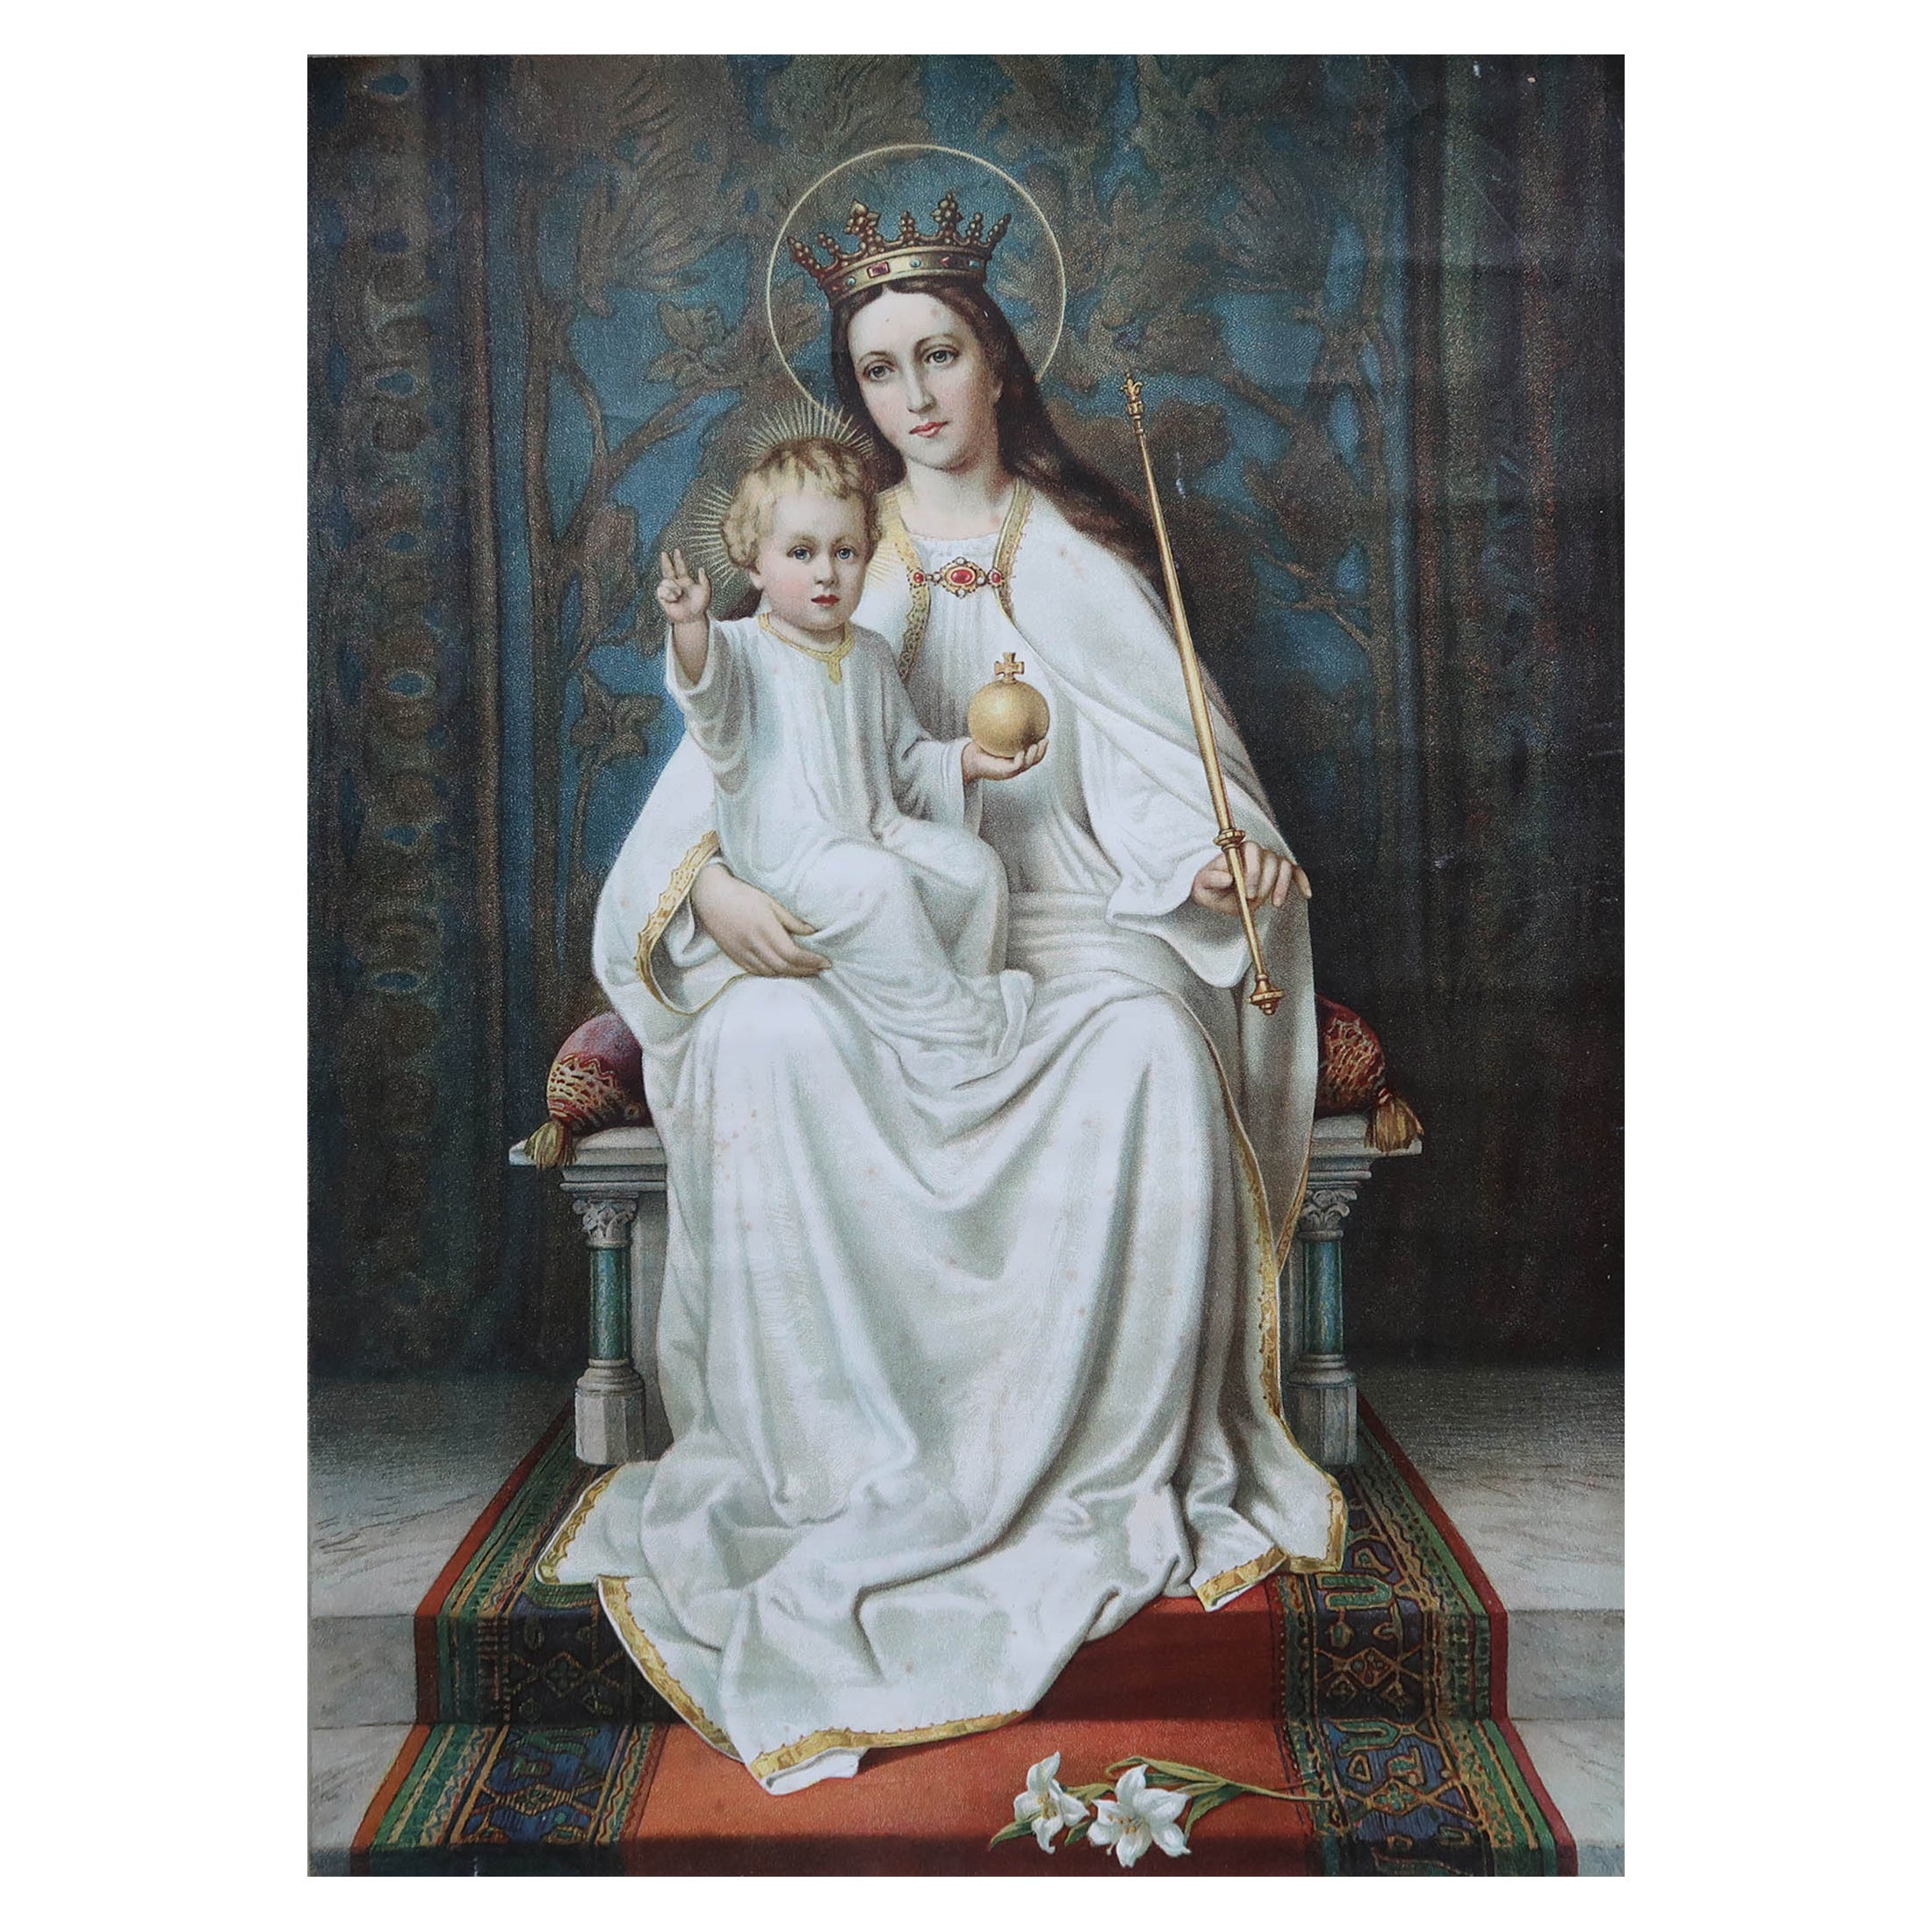 Großer Original-Antikdruck der Madonna mit Kind, um 1900